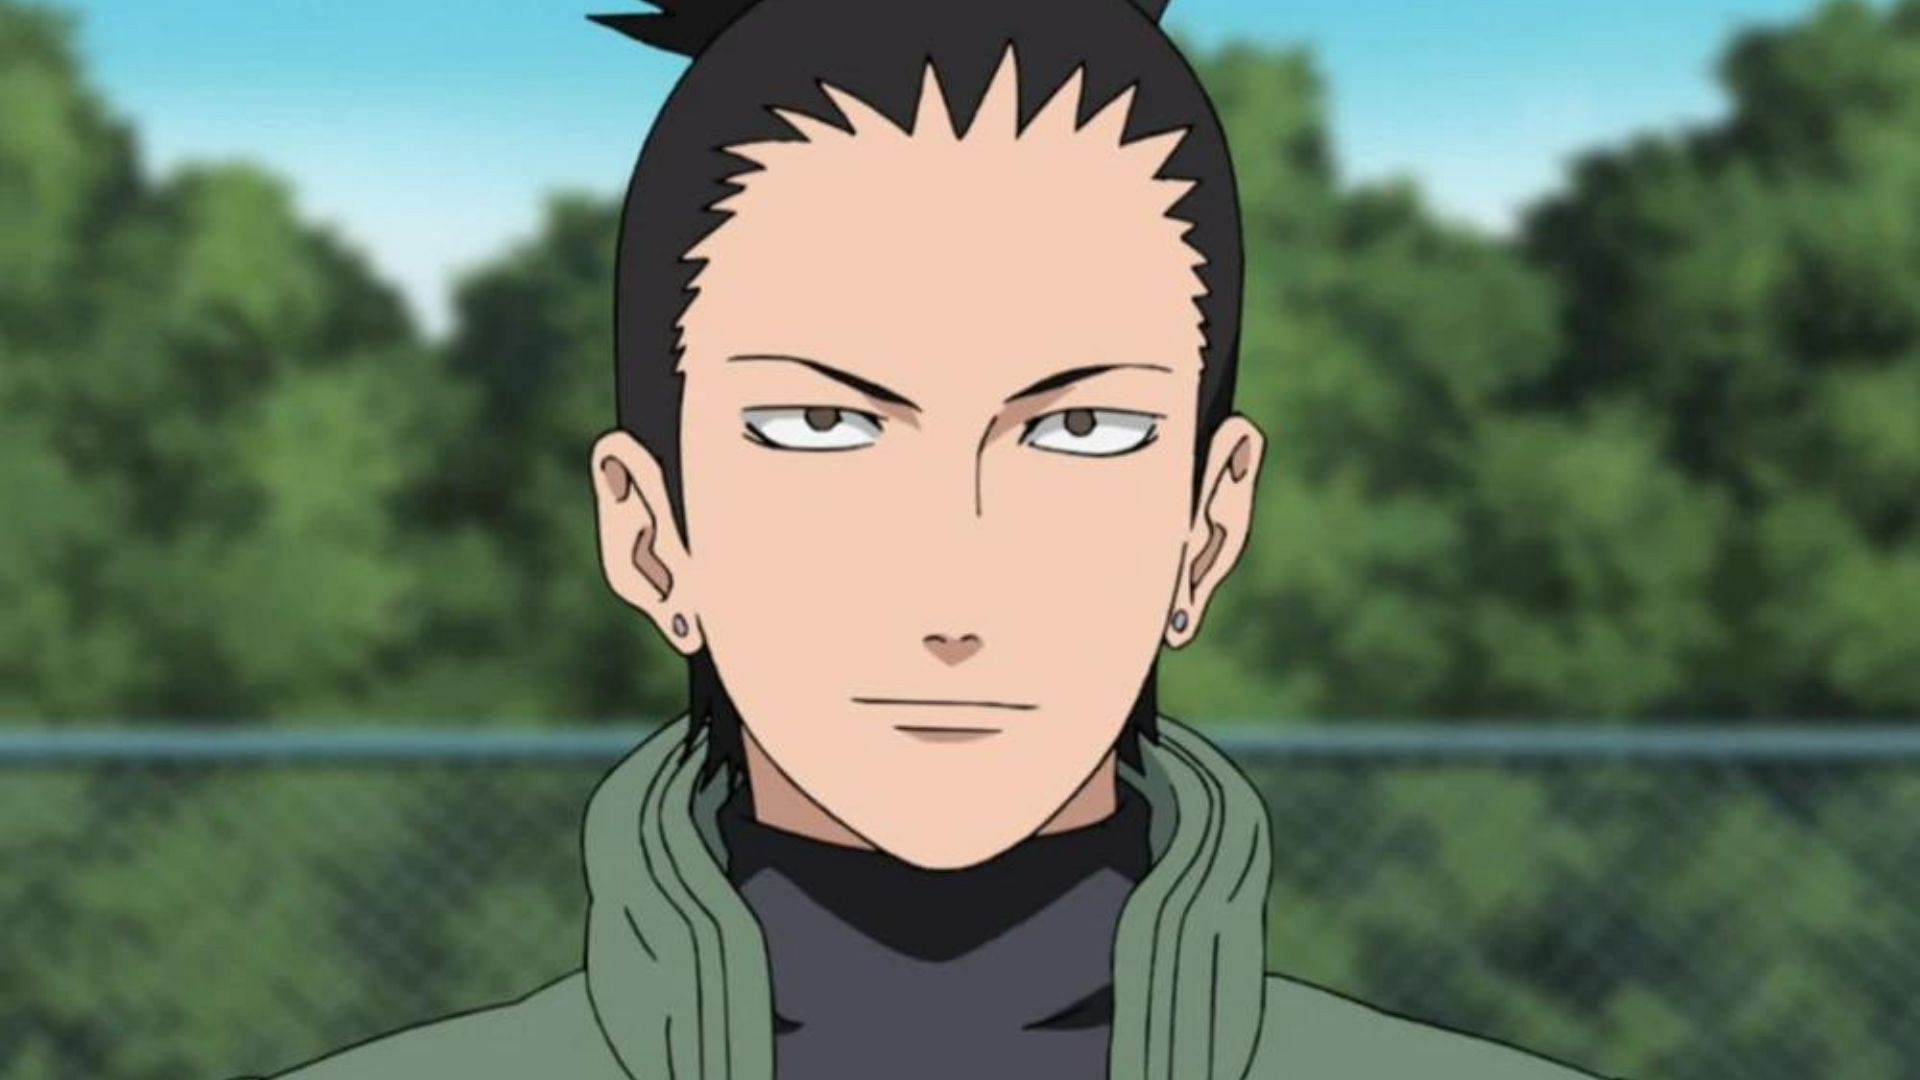 Shikamaru nara as shown in Naruto Shipudden anime ( Image via Studio Pierrot)